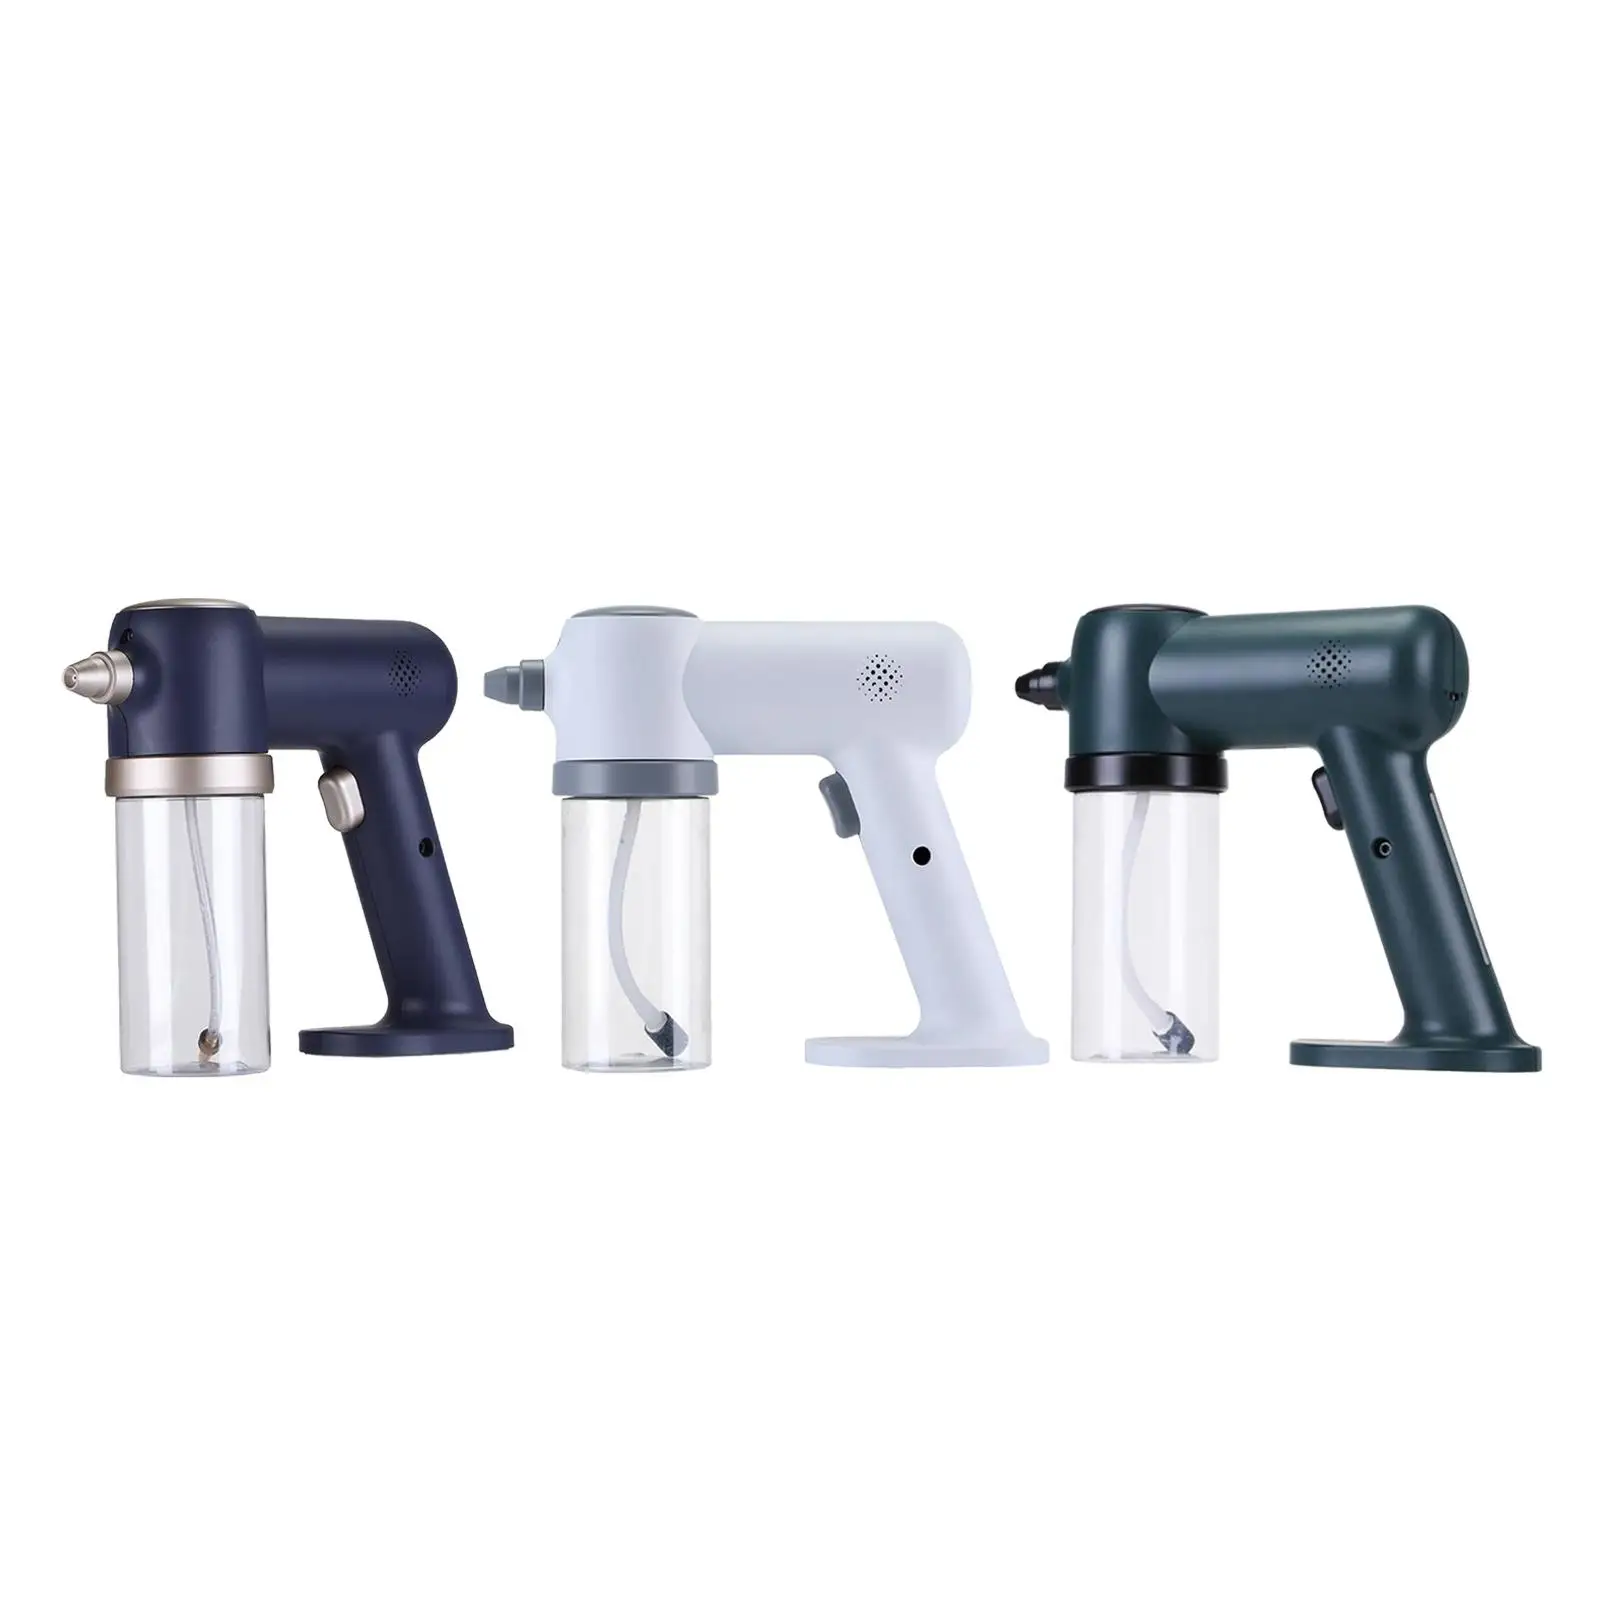 300ML Handheld Nano Atomization Sanitizer Sprayer Blue Light Rechargeable Spray Gun Home Disinfection Machine Atomizer